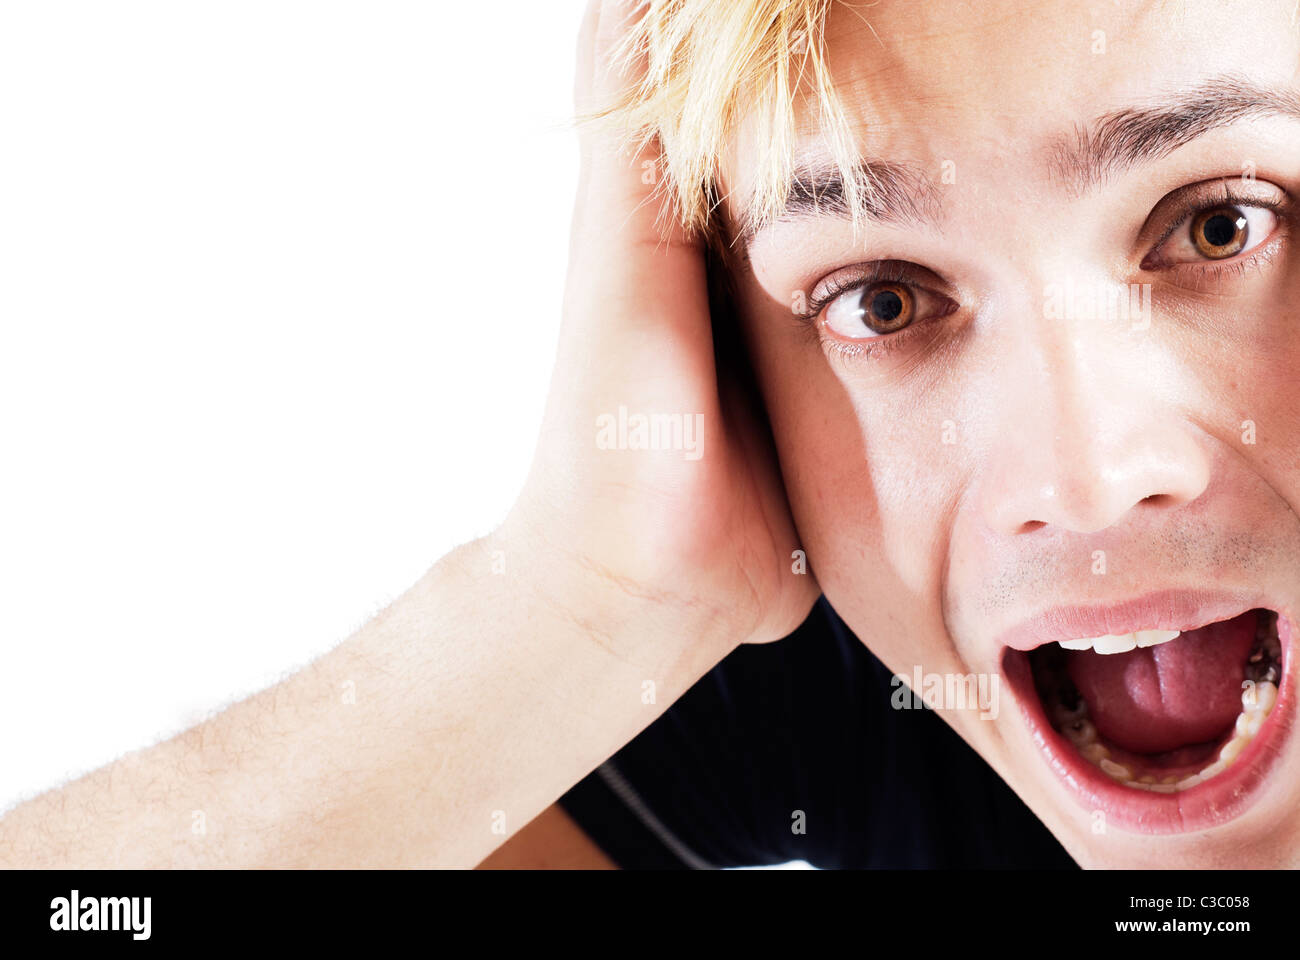 Face close up of young man screaming avec sa main sur le visage Banque D'Images